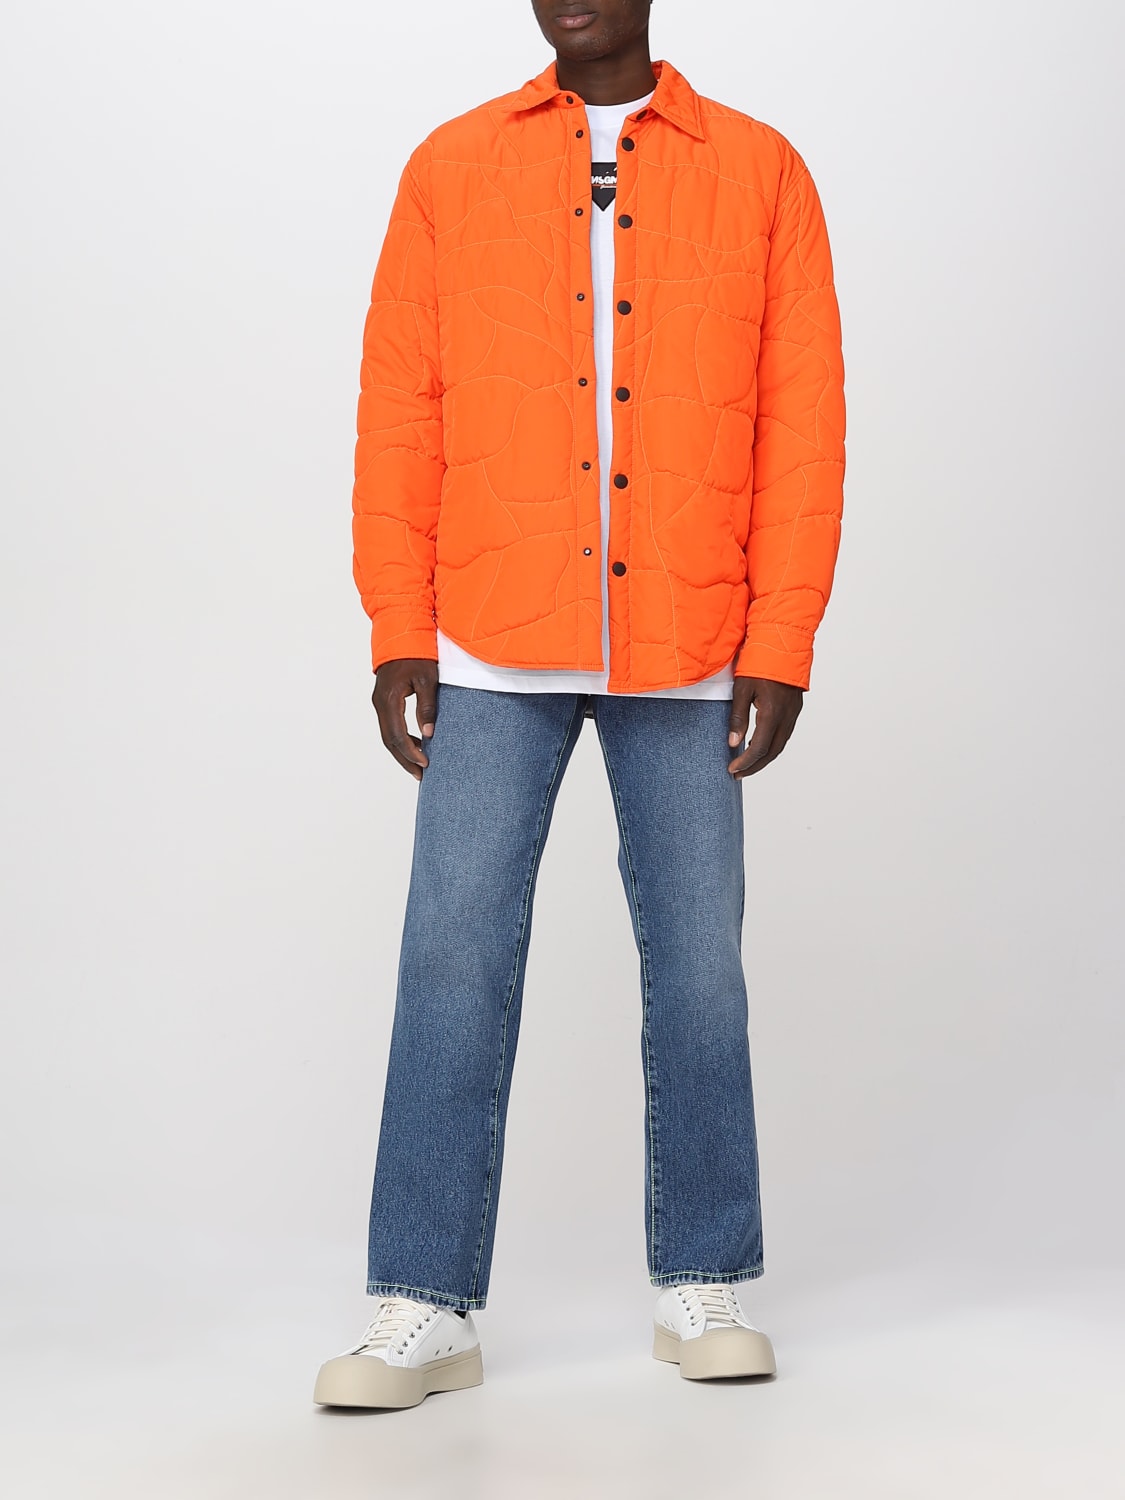 Msgm Outlet: jacket for man   Orange   Msgm jacket ME